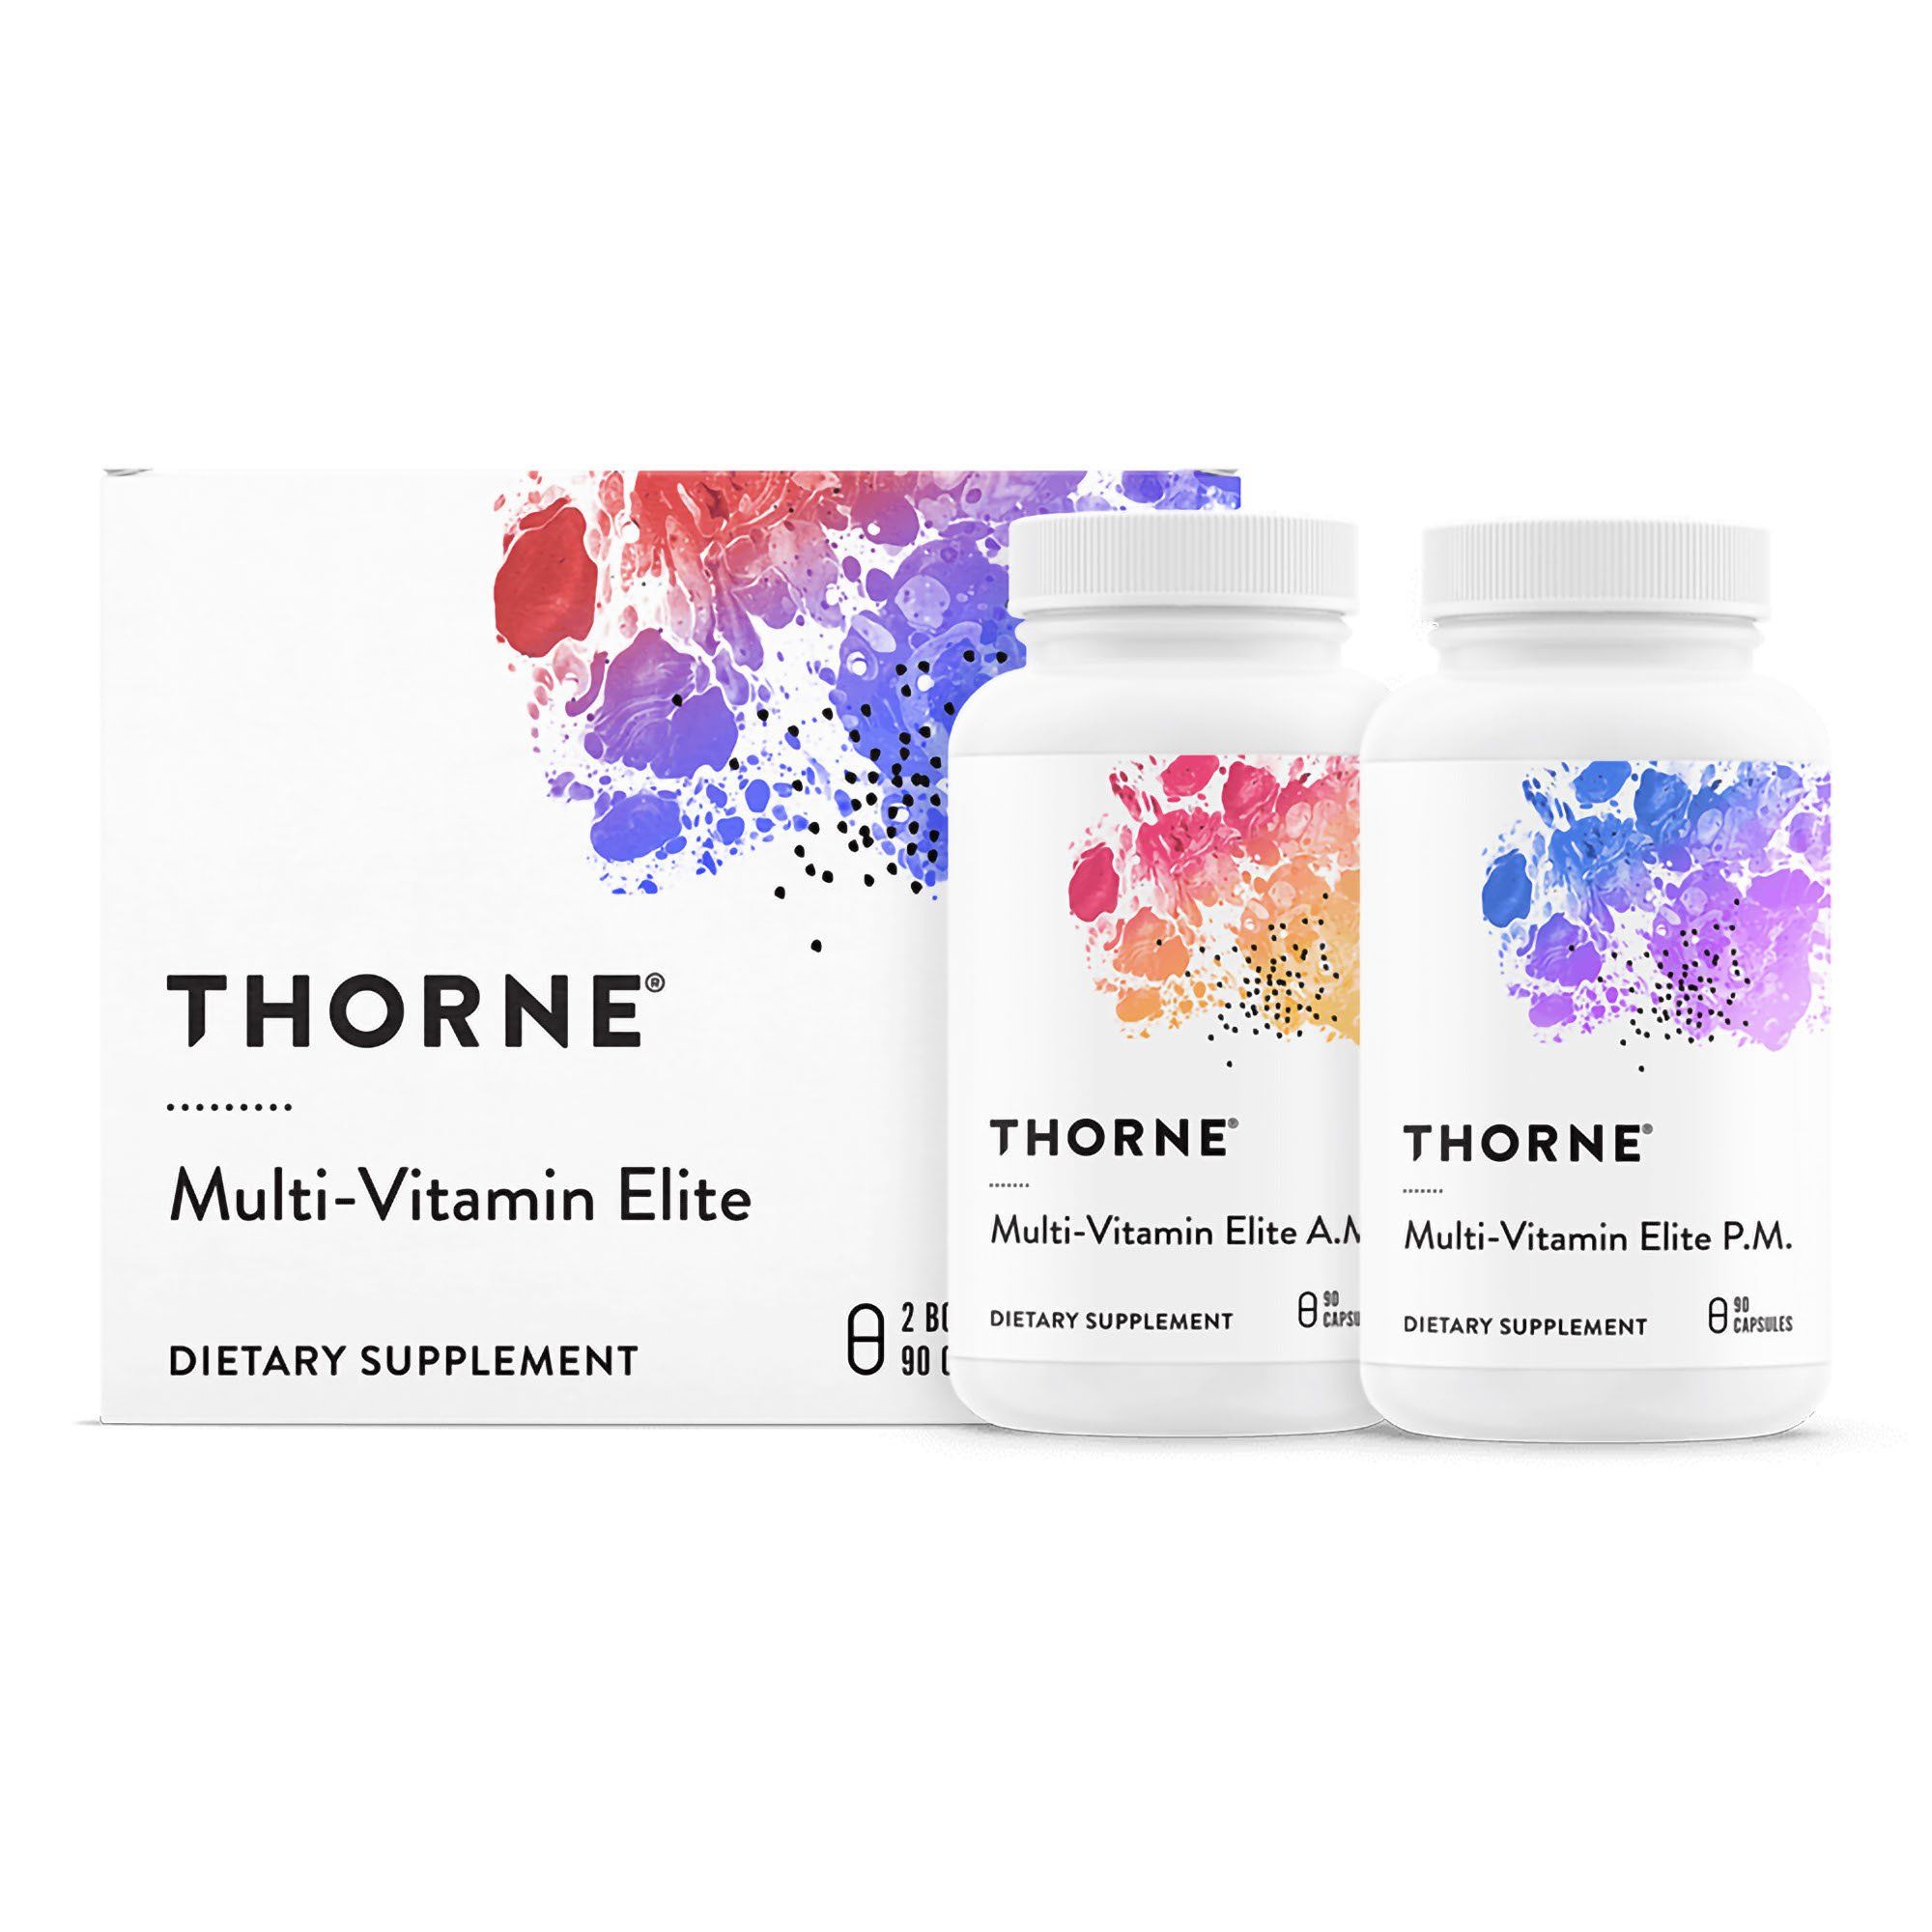 Thorne Multi-Vitamin Elite A.M & P.M Capsules - 180 ct